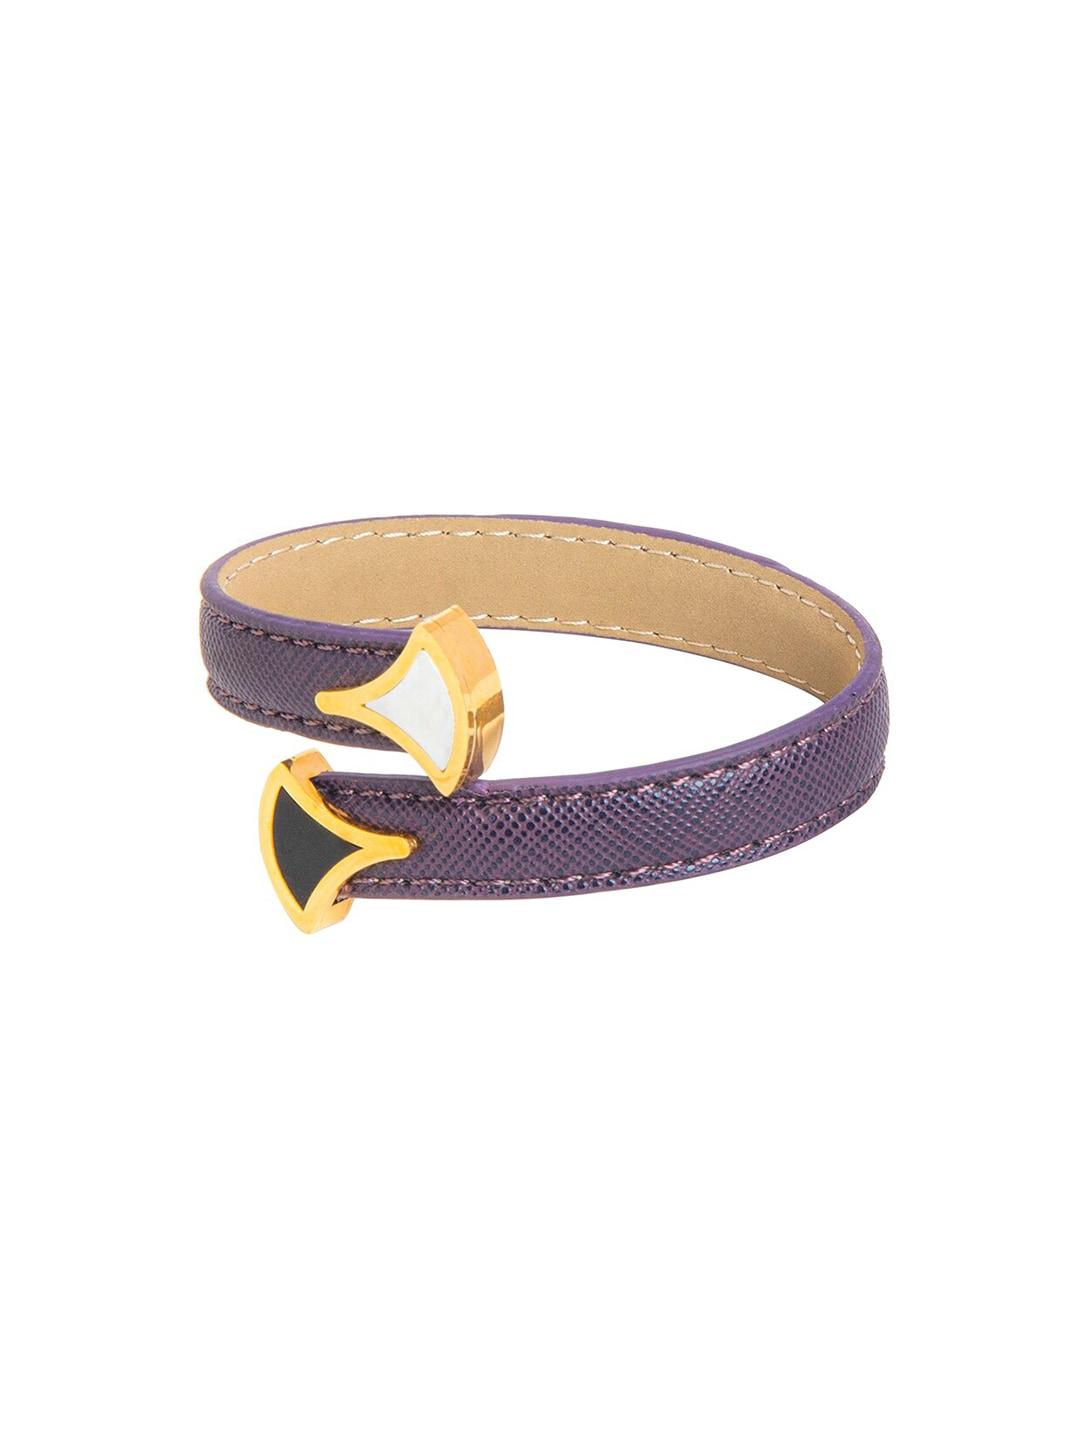 moon dust women purple & gold-toned brass wraparound bracelet